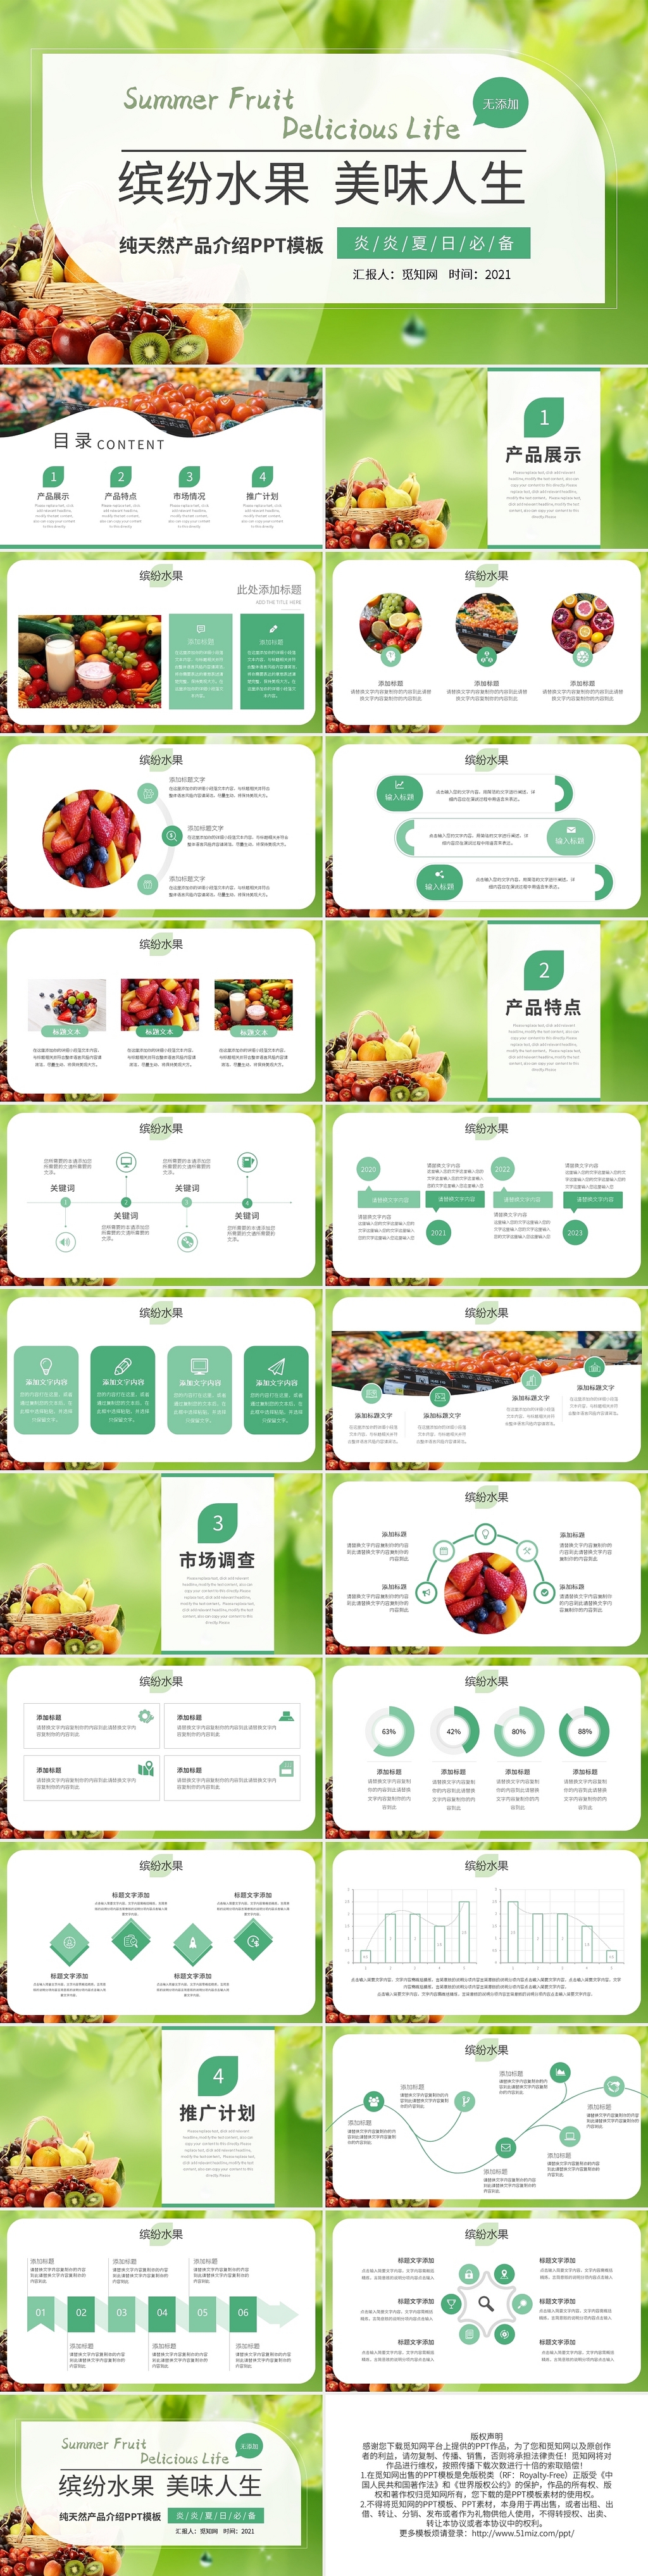 缤纷水果美味人生纯天然产品介绍PPT模板宣传PPT动态PPT水果产品介绍